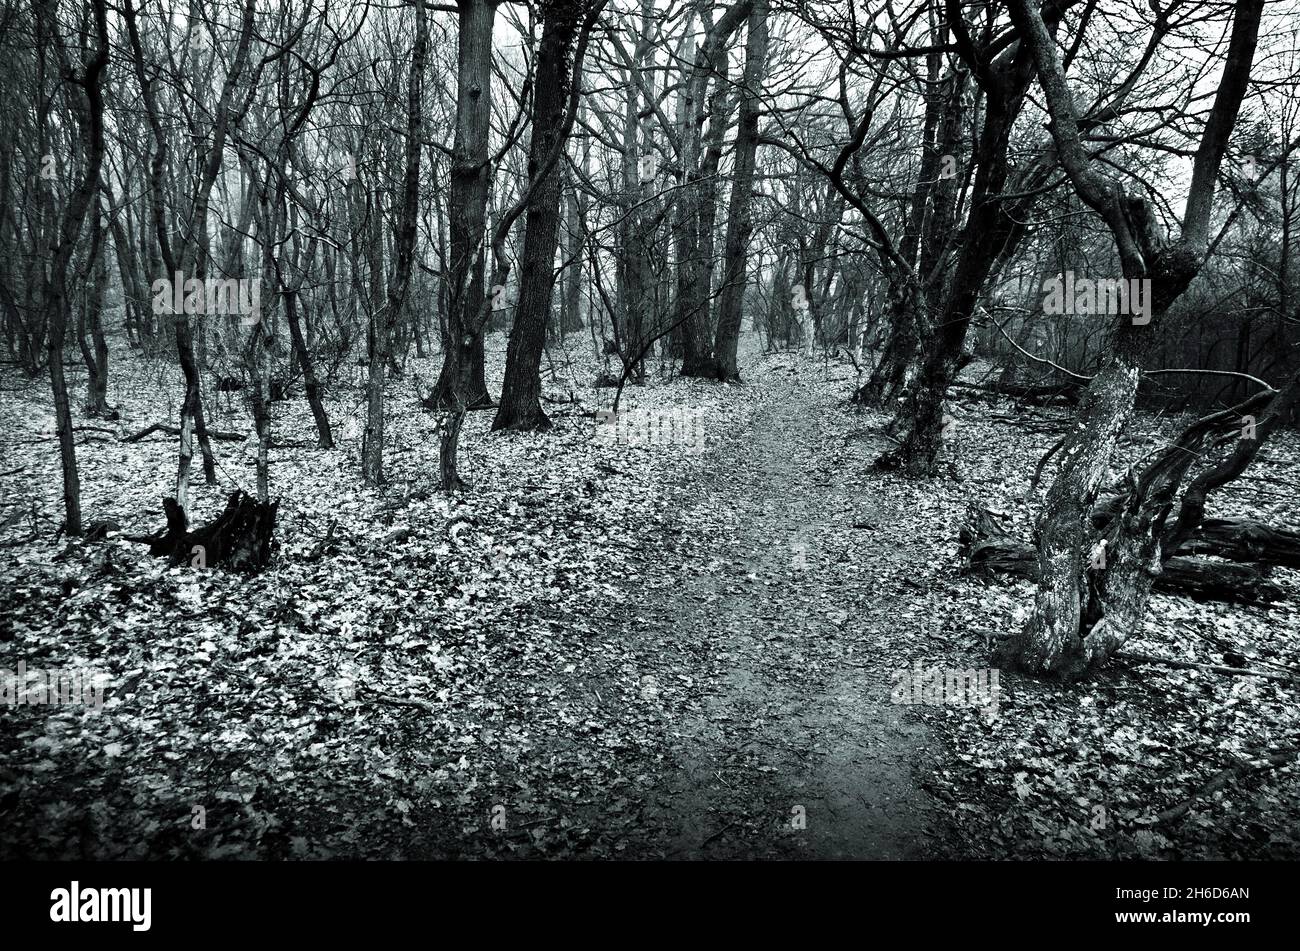 Im Fantasy Forest. Mystery dunklen Horror Wald . Schöne Herbstnatur in grün dunkler Stimmung. Stockfoto